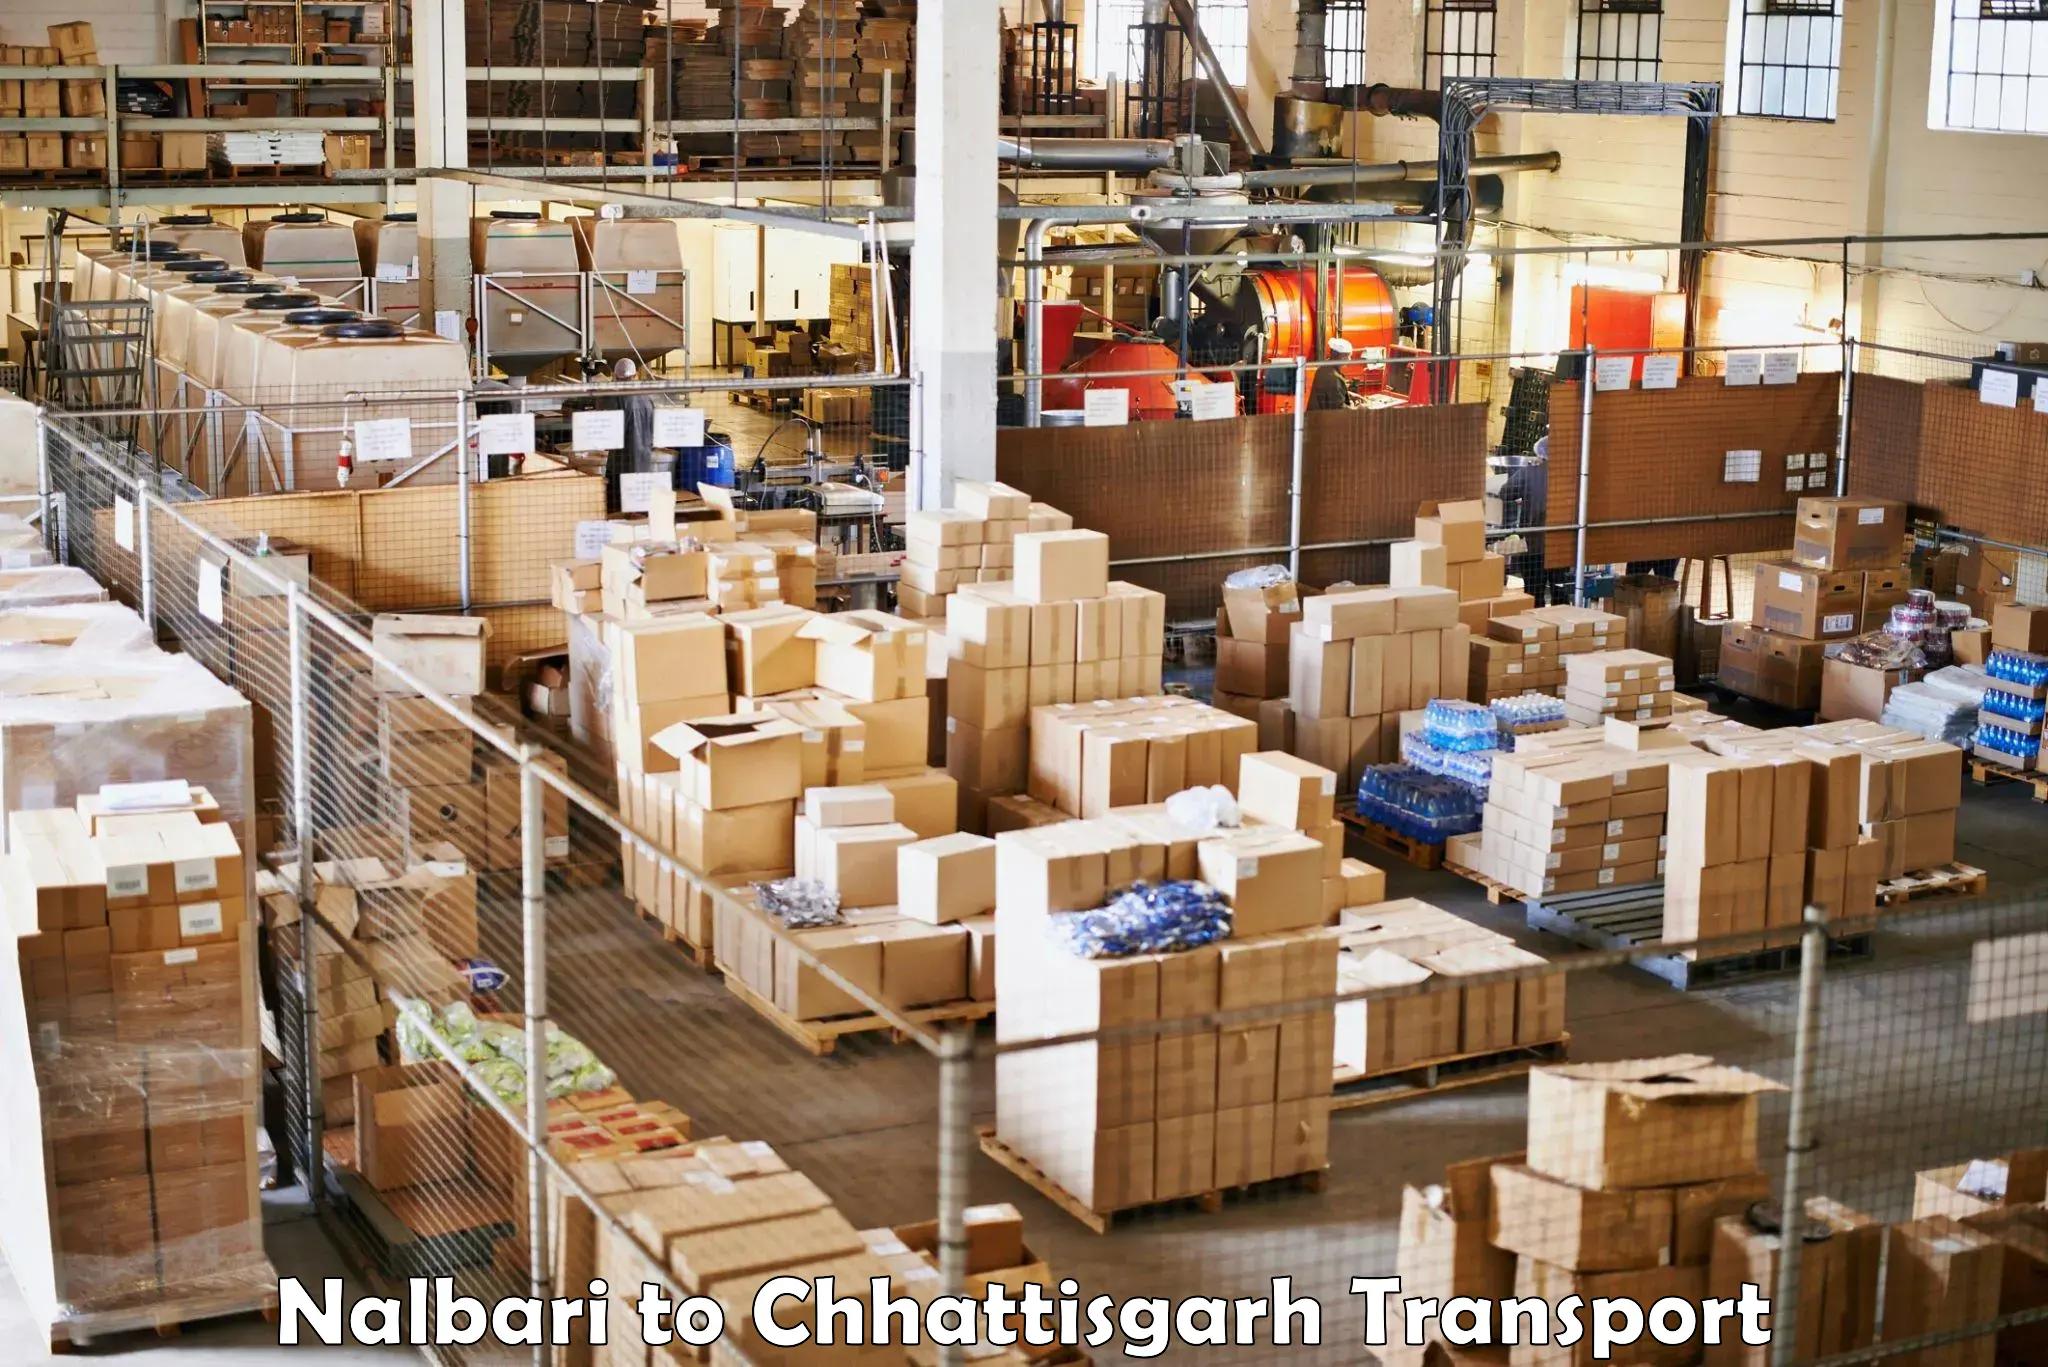 Daily transport service Nalbari to Ramanujganj